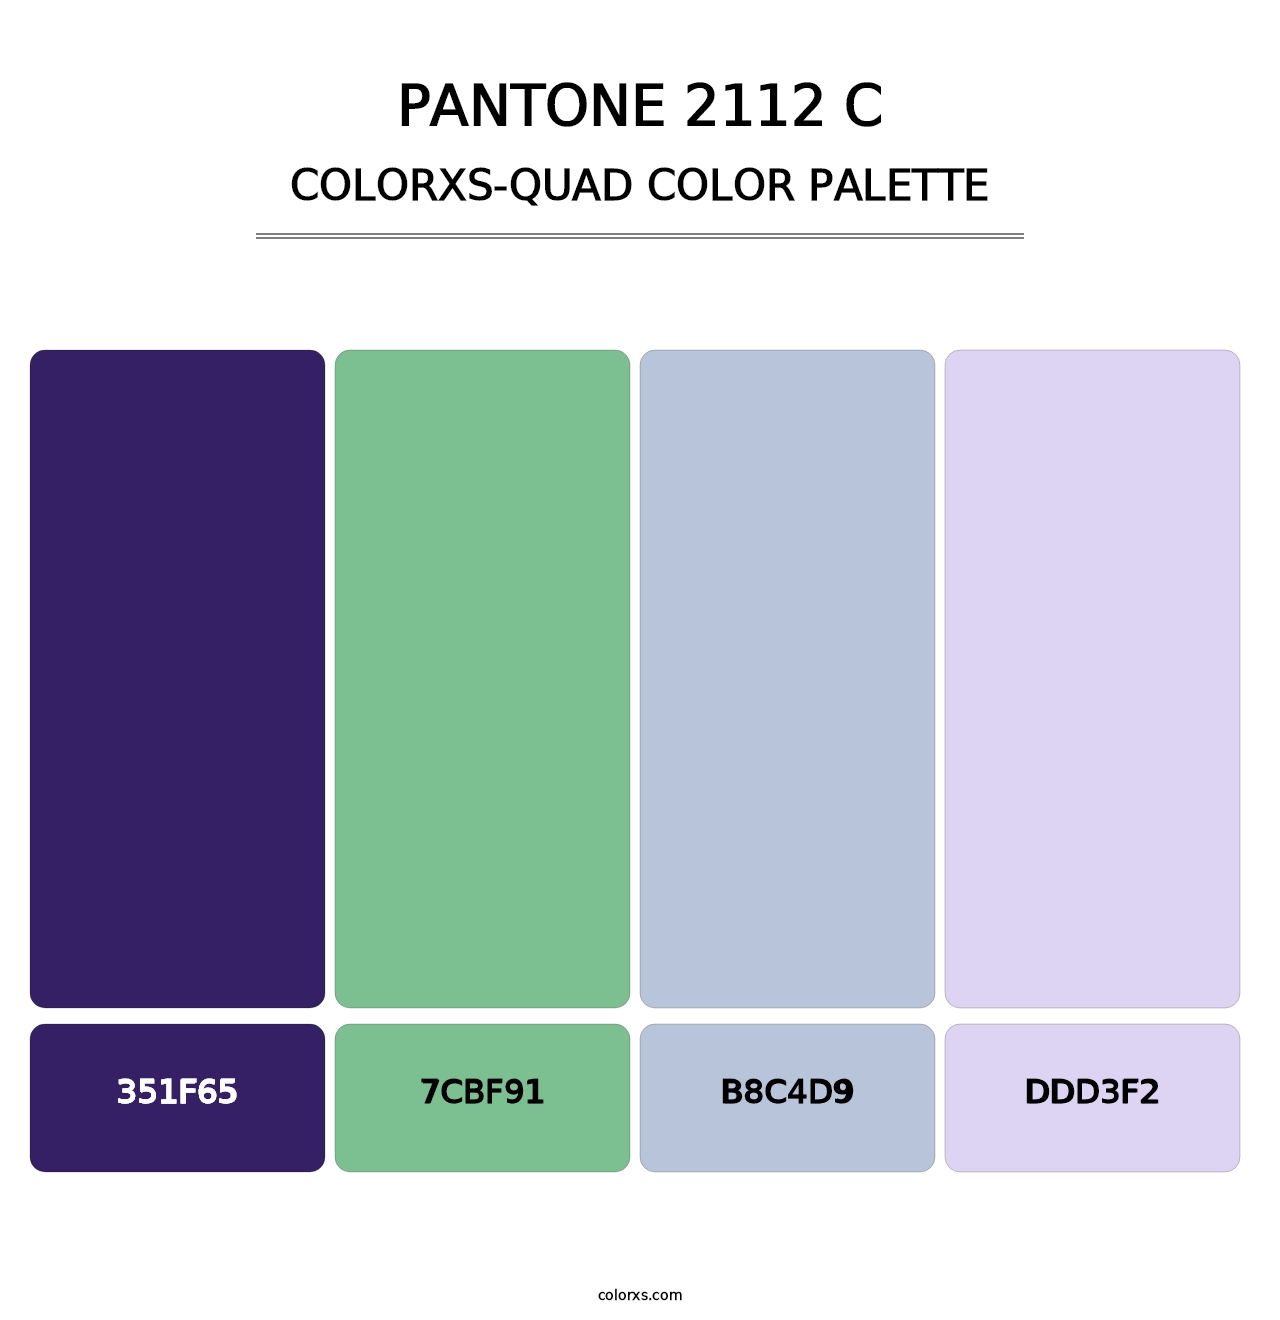 PANTONE 2112 C - Colorxs Quad Palette